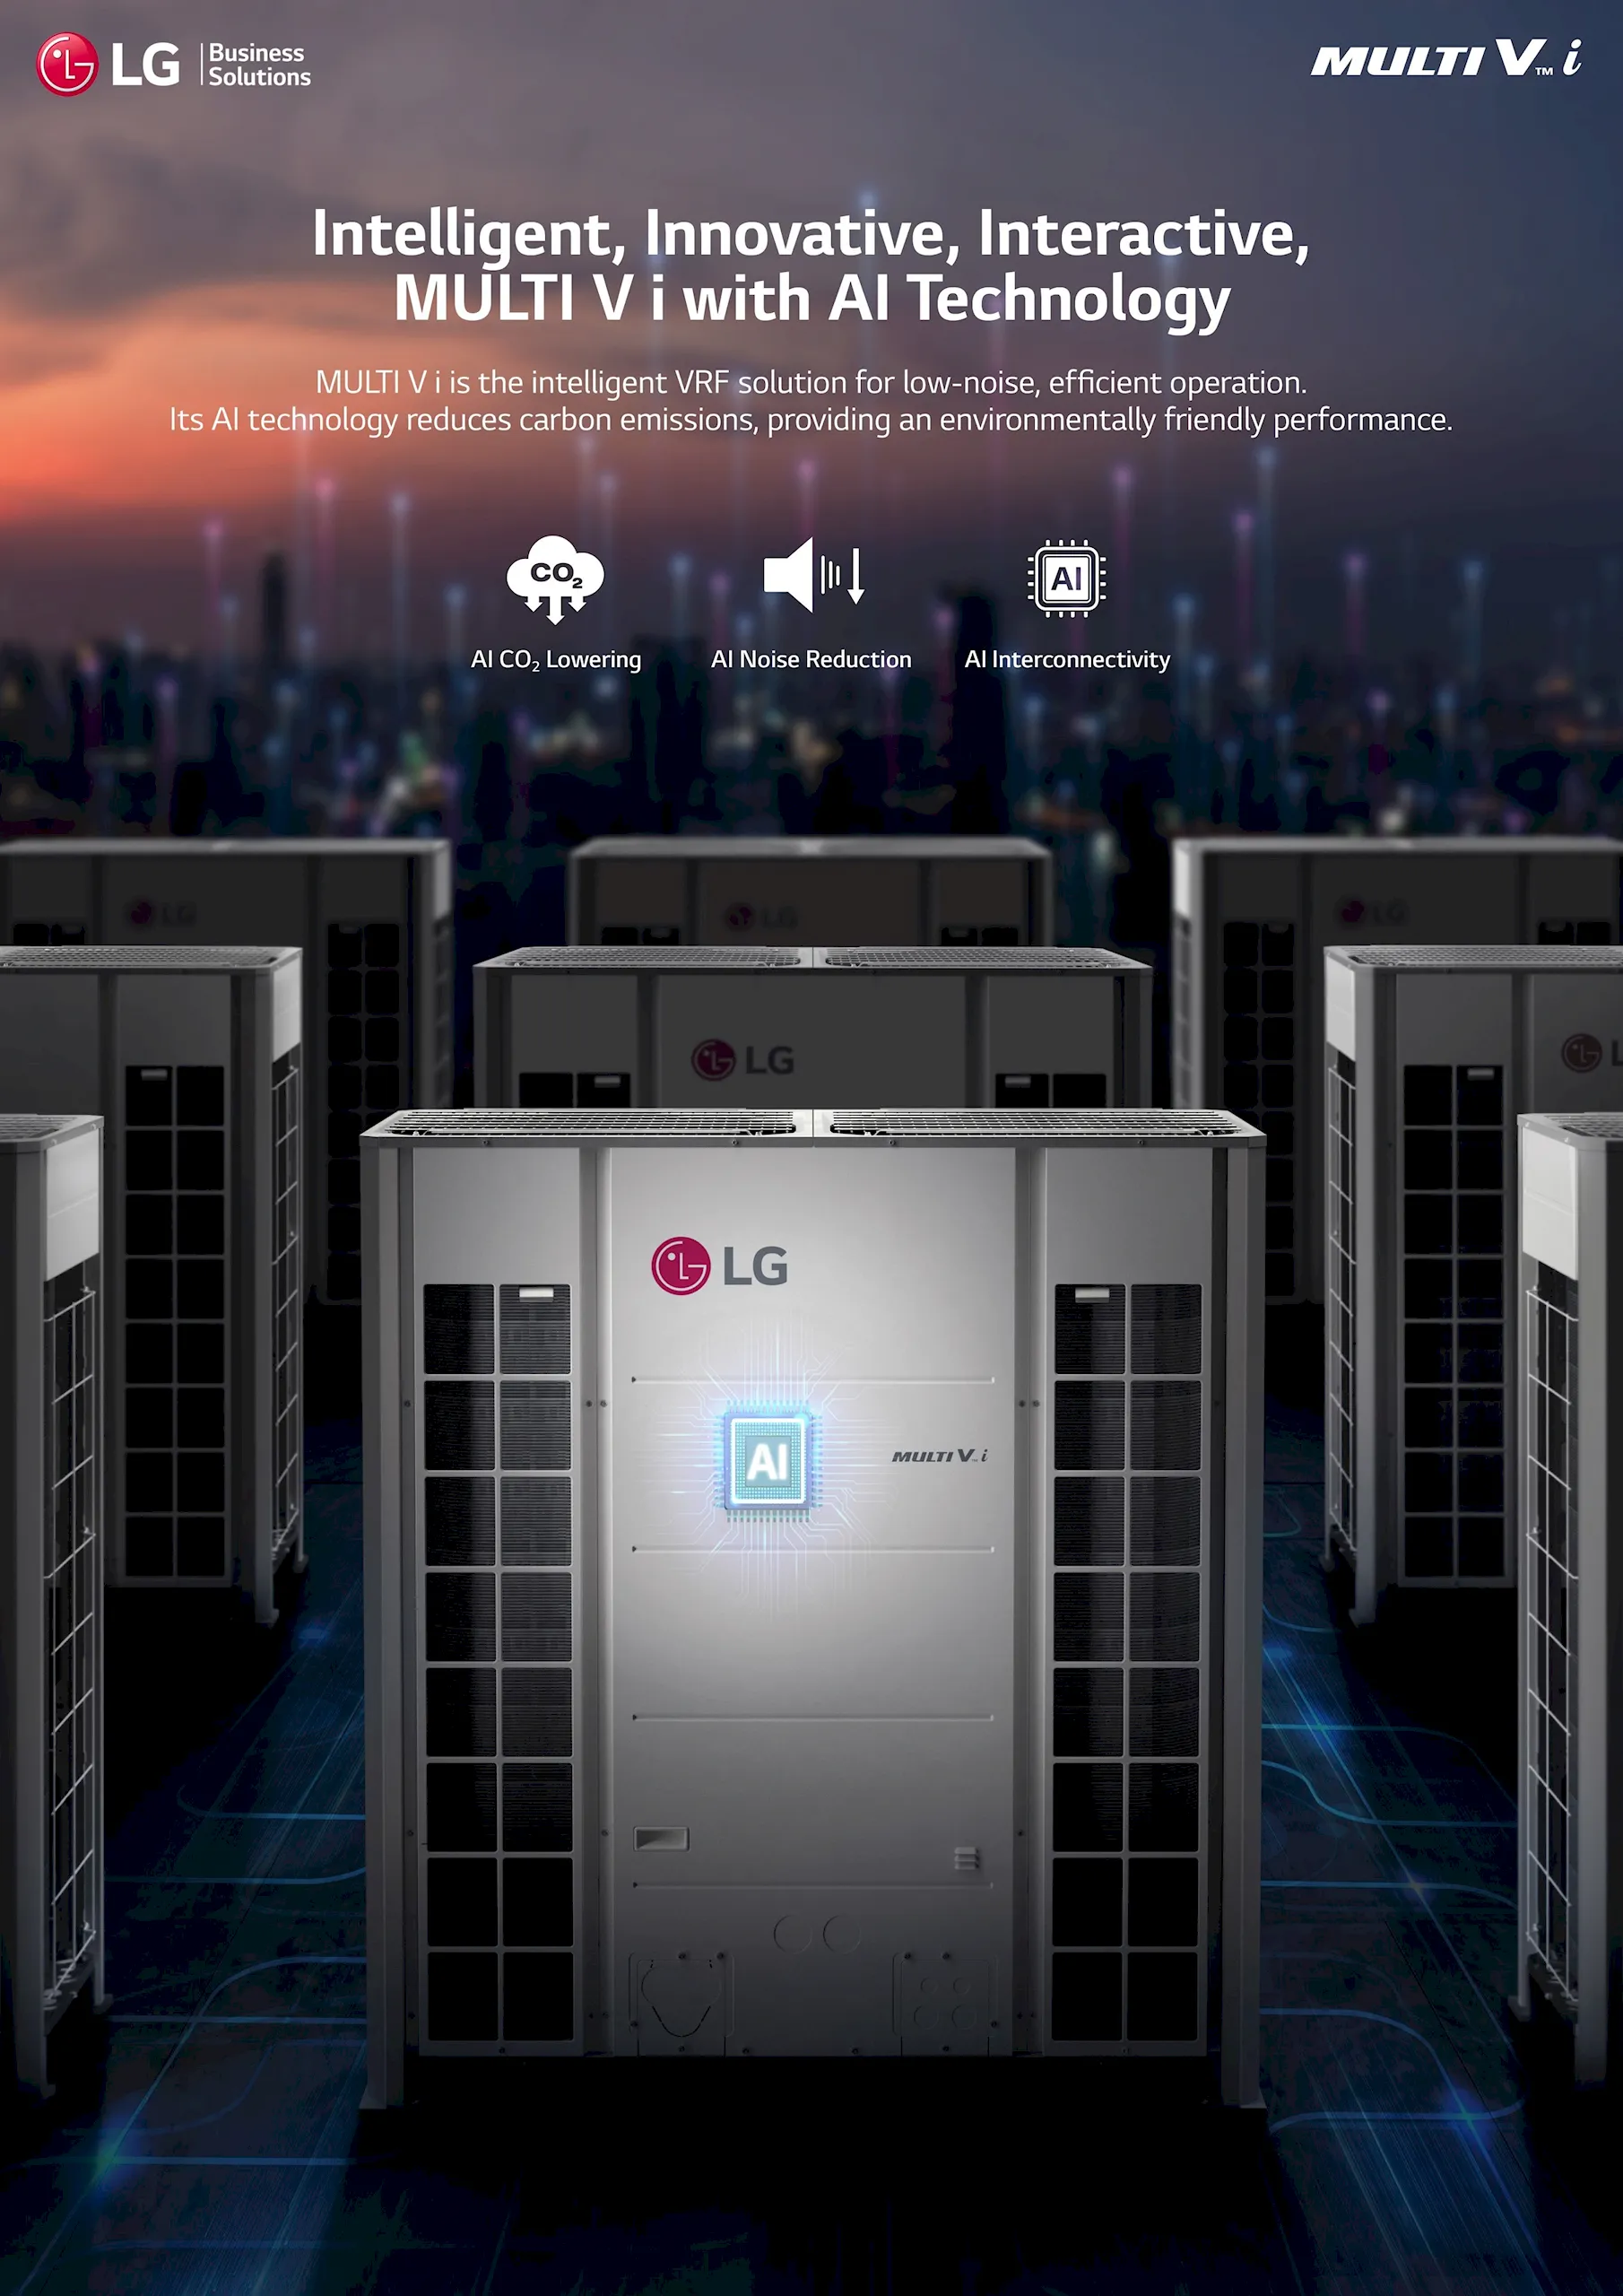 Điều hòa hệ thống tích hợp trí tuệ nhân tạo LG Multi V i - Tối ưu hiệu quả điều hòa, tiết kiệm điện năng và bảo vệ môi trường